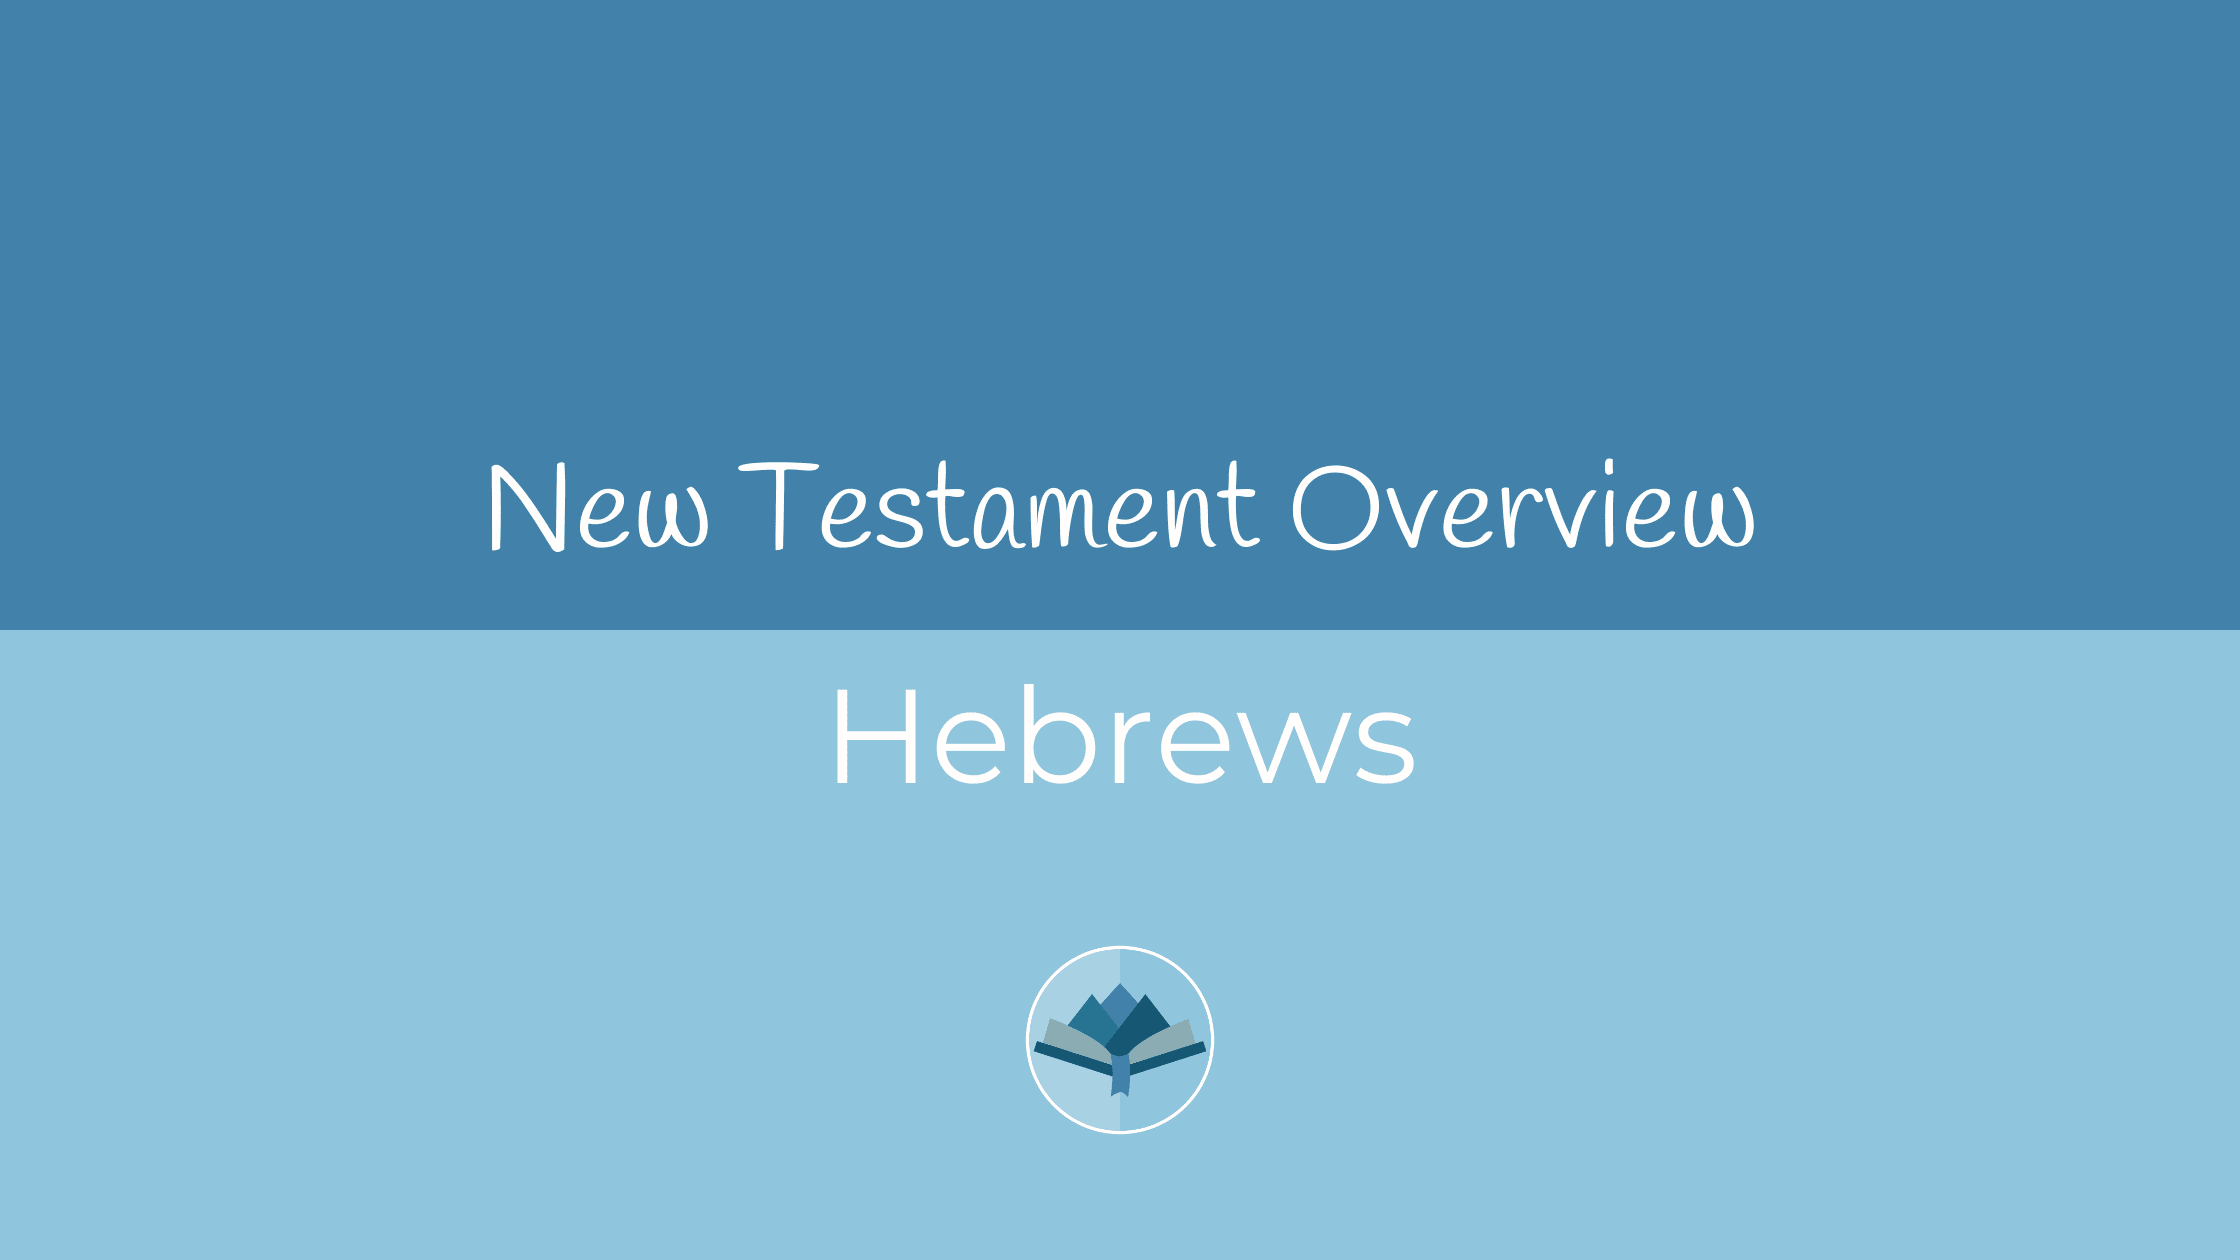 Hebrews Overview